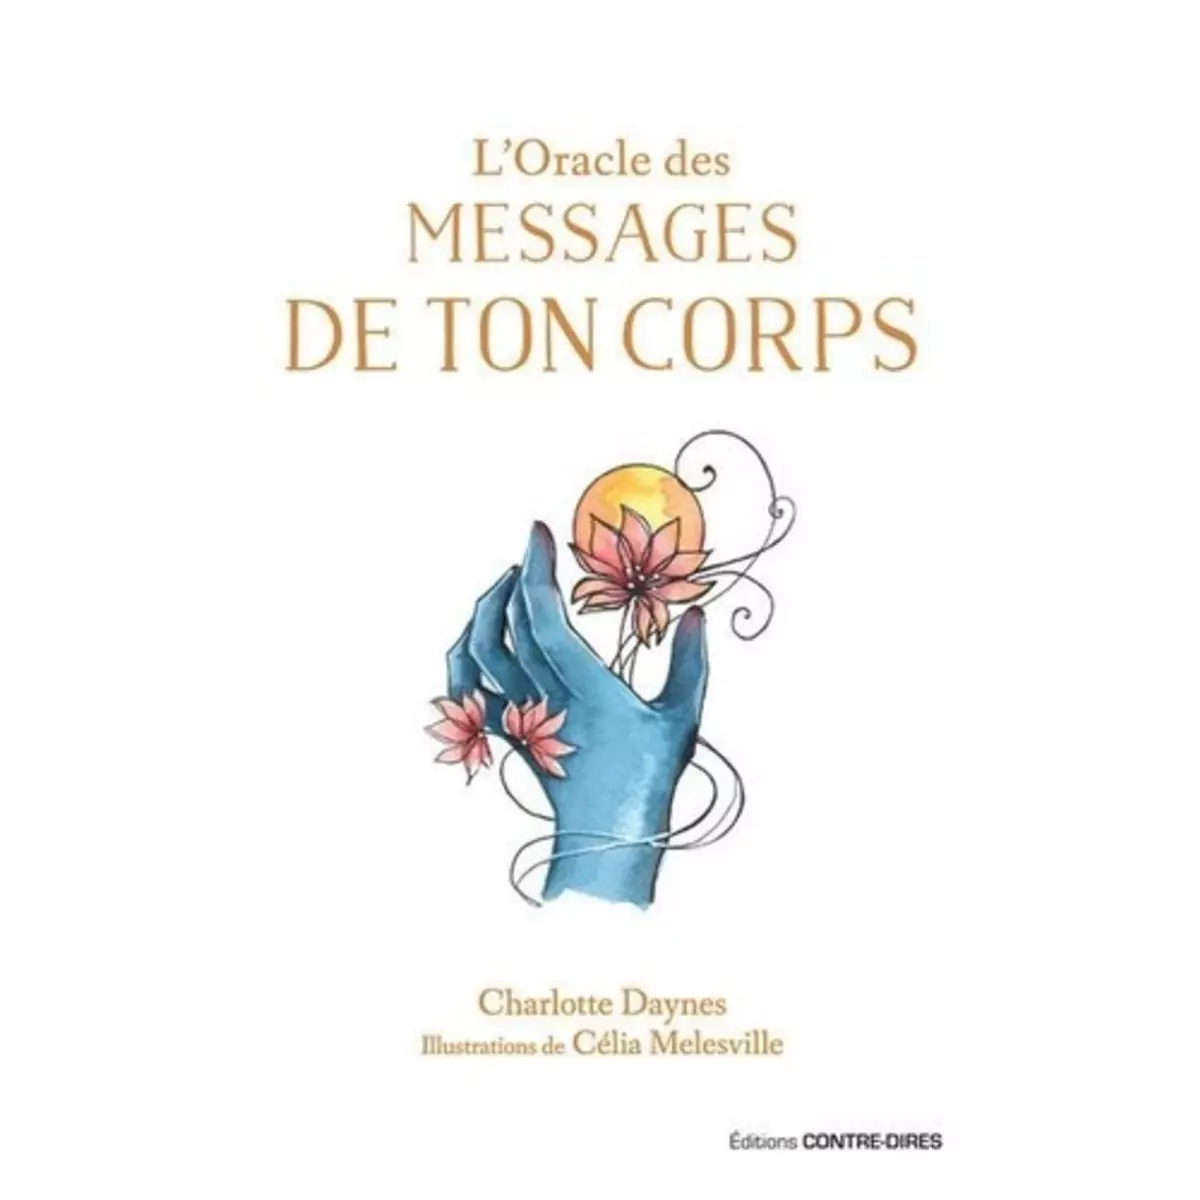  L'ORACLE DES MESSAGES DE TON CORPS, Daynes Charlotte